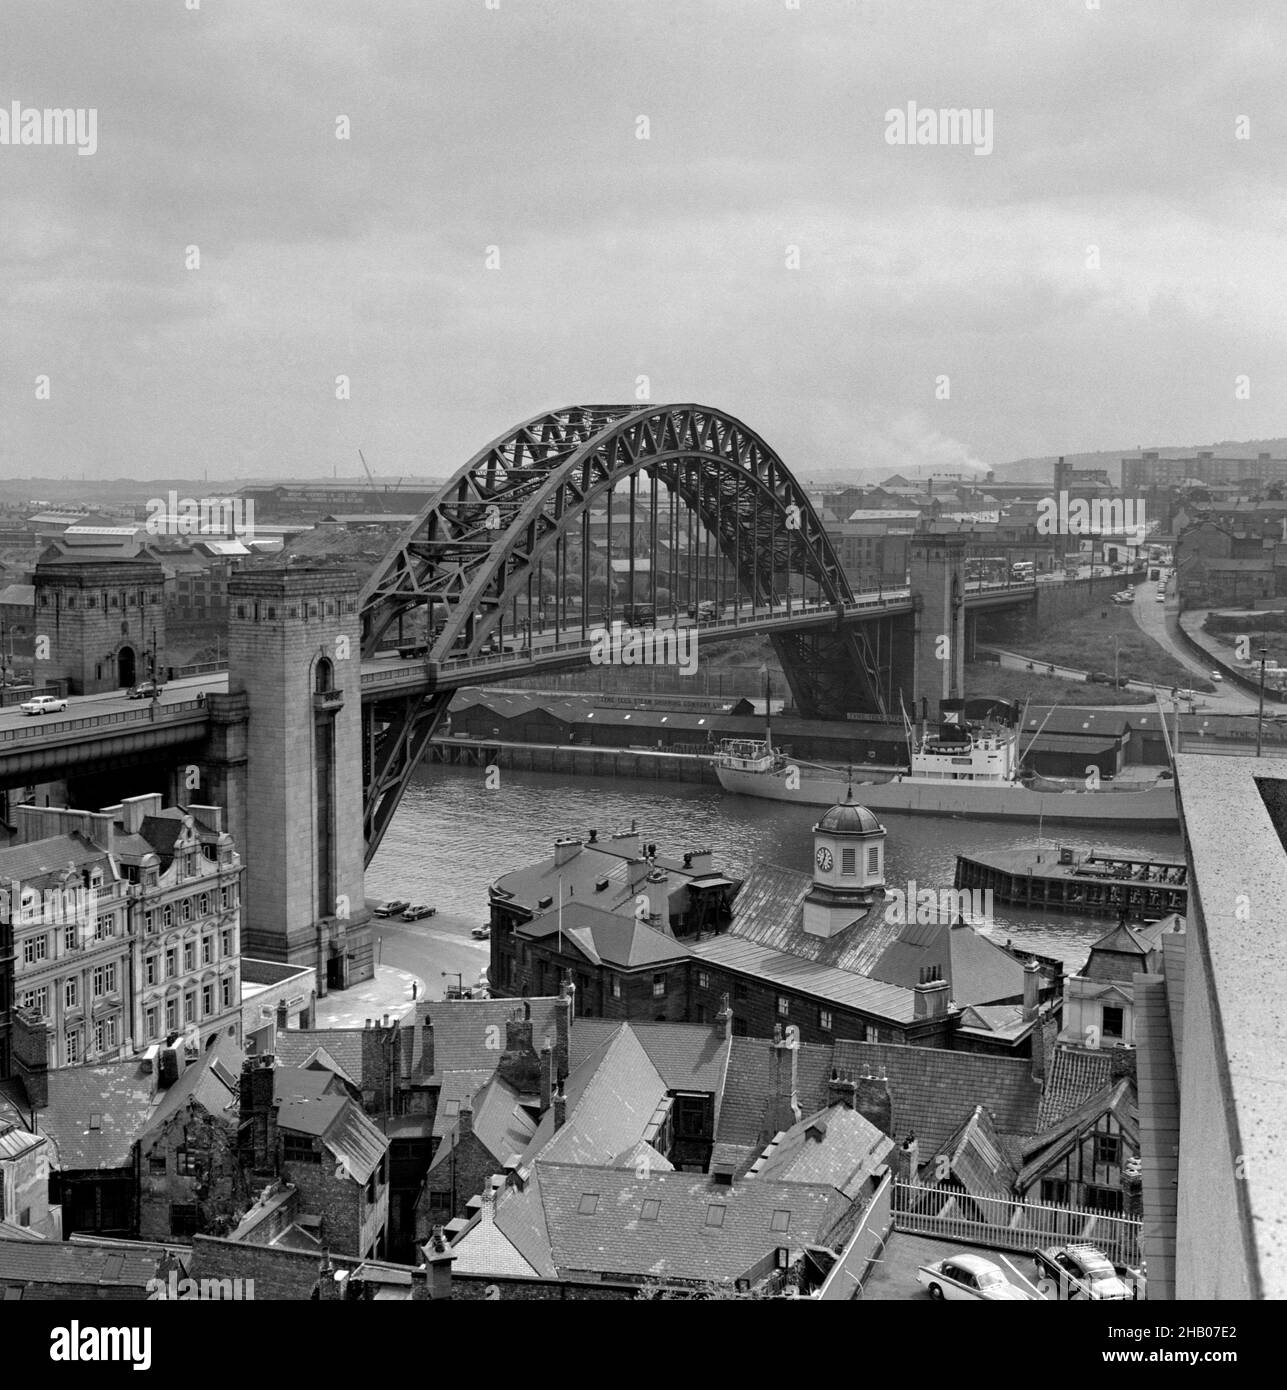 Foto di archivio datata 5/4/1962 del Tyne Bridge, fotografata dal lato Newcastle del fiume. Il Consiglio comunale di Newcastle ha detto che il ponte Tyne, arrugginito, era una metafora dei danni causati dall'austerità Tory dal 2010 e sarebbe stato riparato se fosse nel Sud-est. Il punto di riferimento nazionale, un simbolo di orgoglio civico per il Nord Est dell'Inghilterra, è stato programmato per essere sottoposto a importanti lavori di ristrutturazione per anni. Data di emissione: Giovedì 16 dicembre 2021. Foto Stock